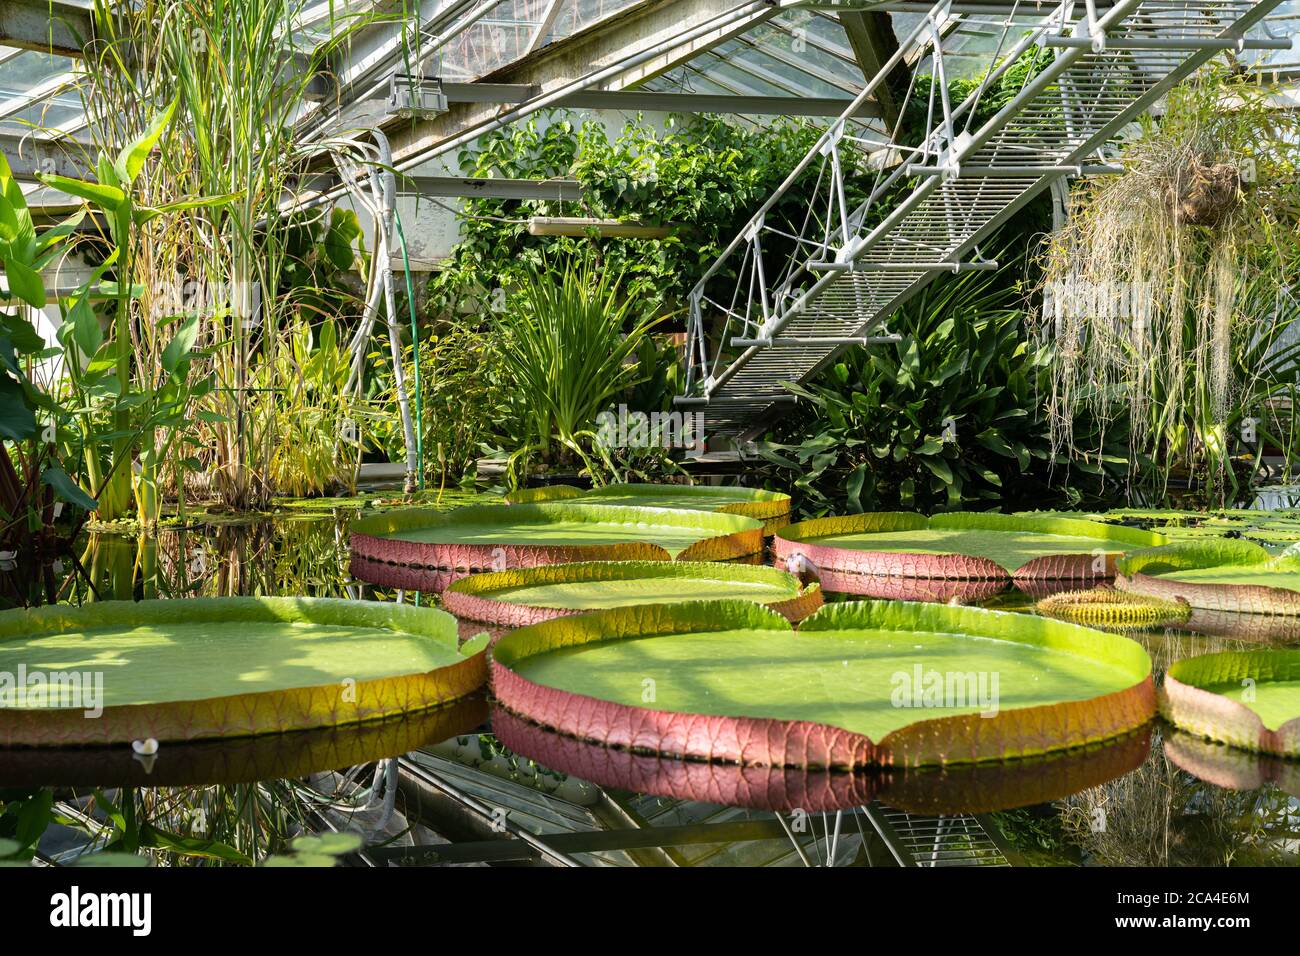 Plantas acuáticas tropicales - lirio de agua gigante y Victoria amazónica flotando en invernadero. Foto de stock